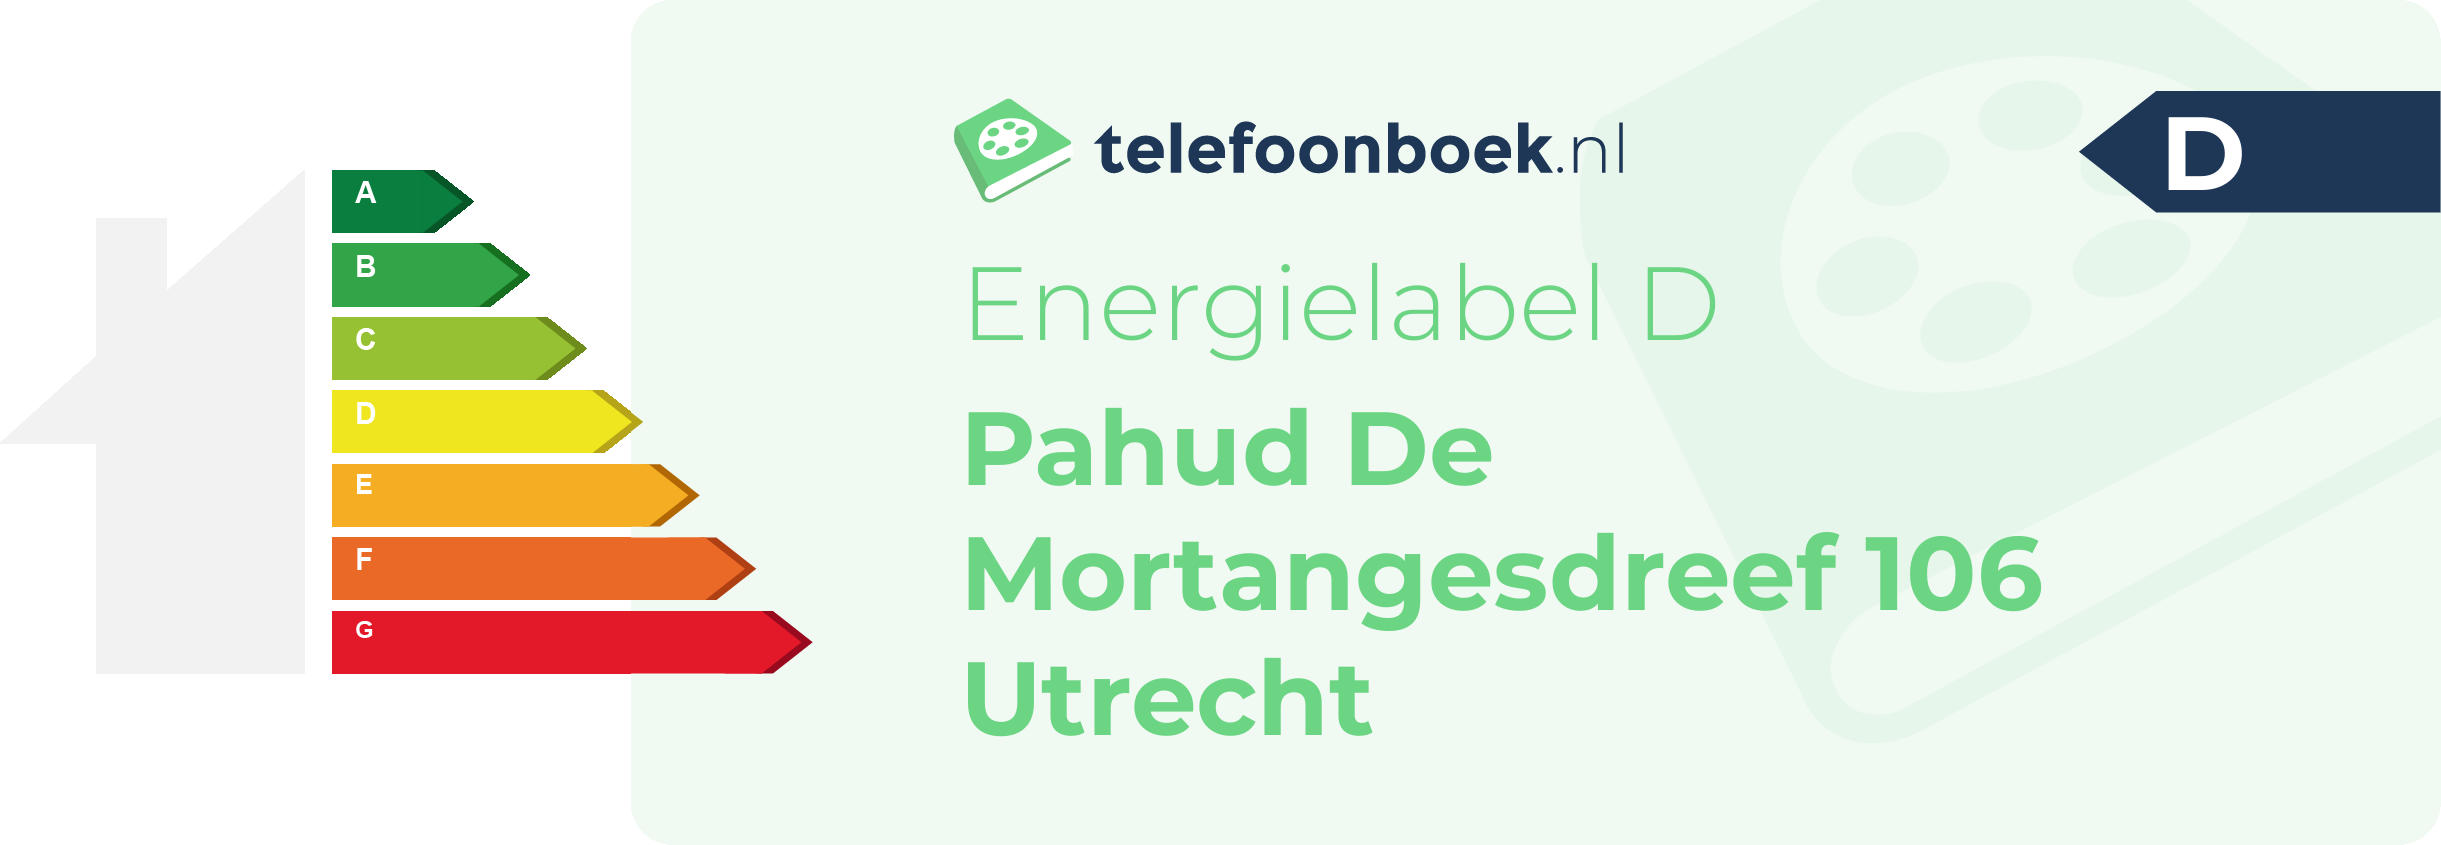 Energielabel Pahud De Mortangesdreef 106 Utrecht